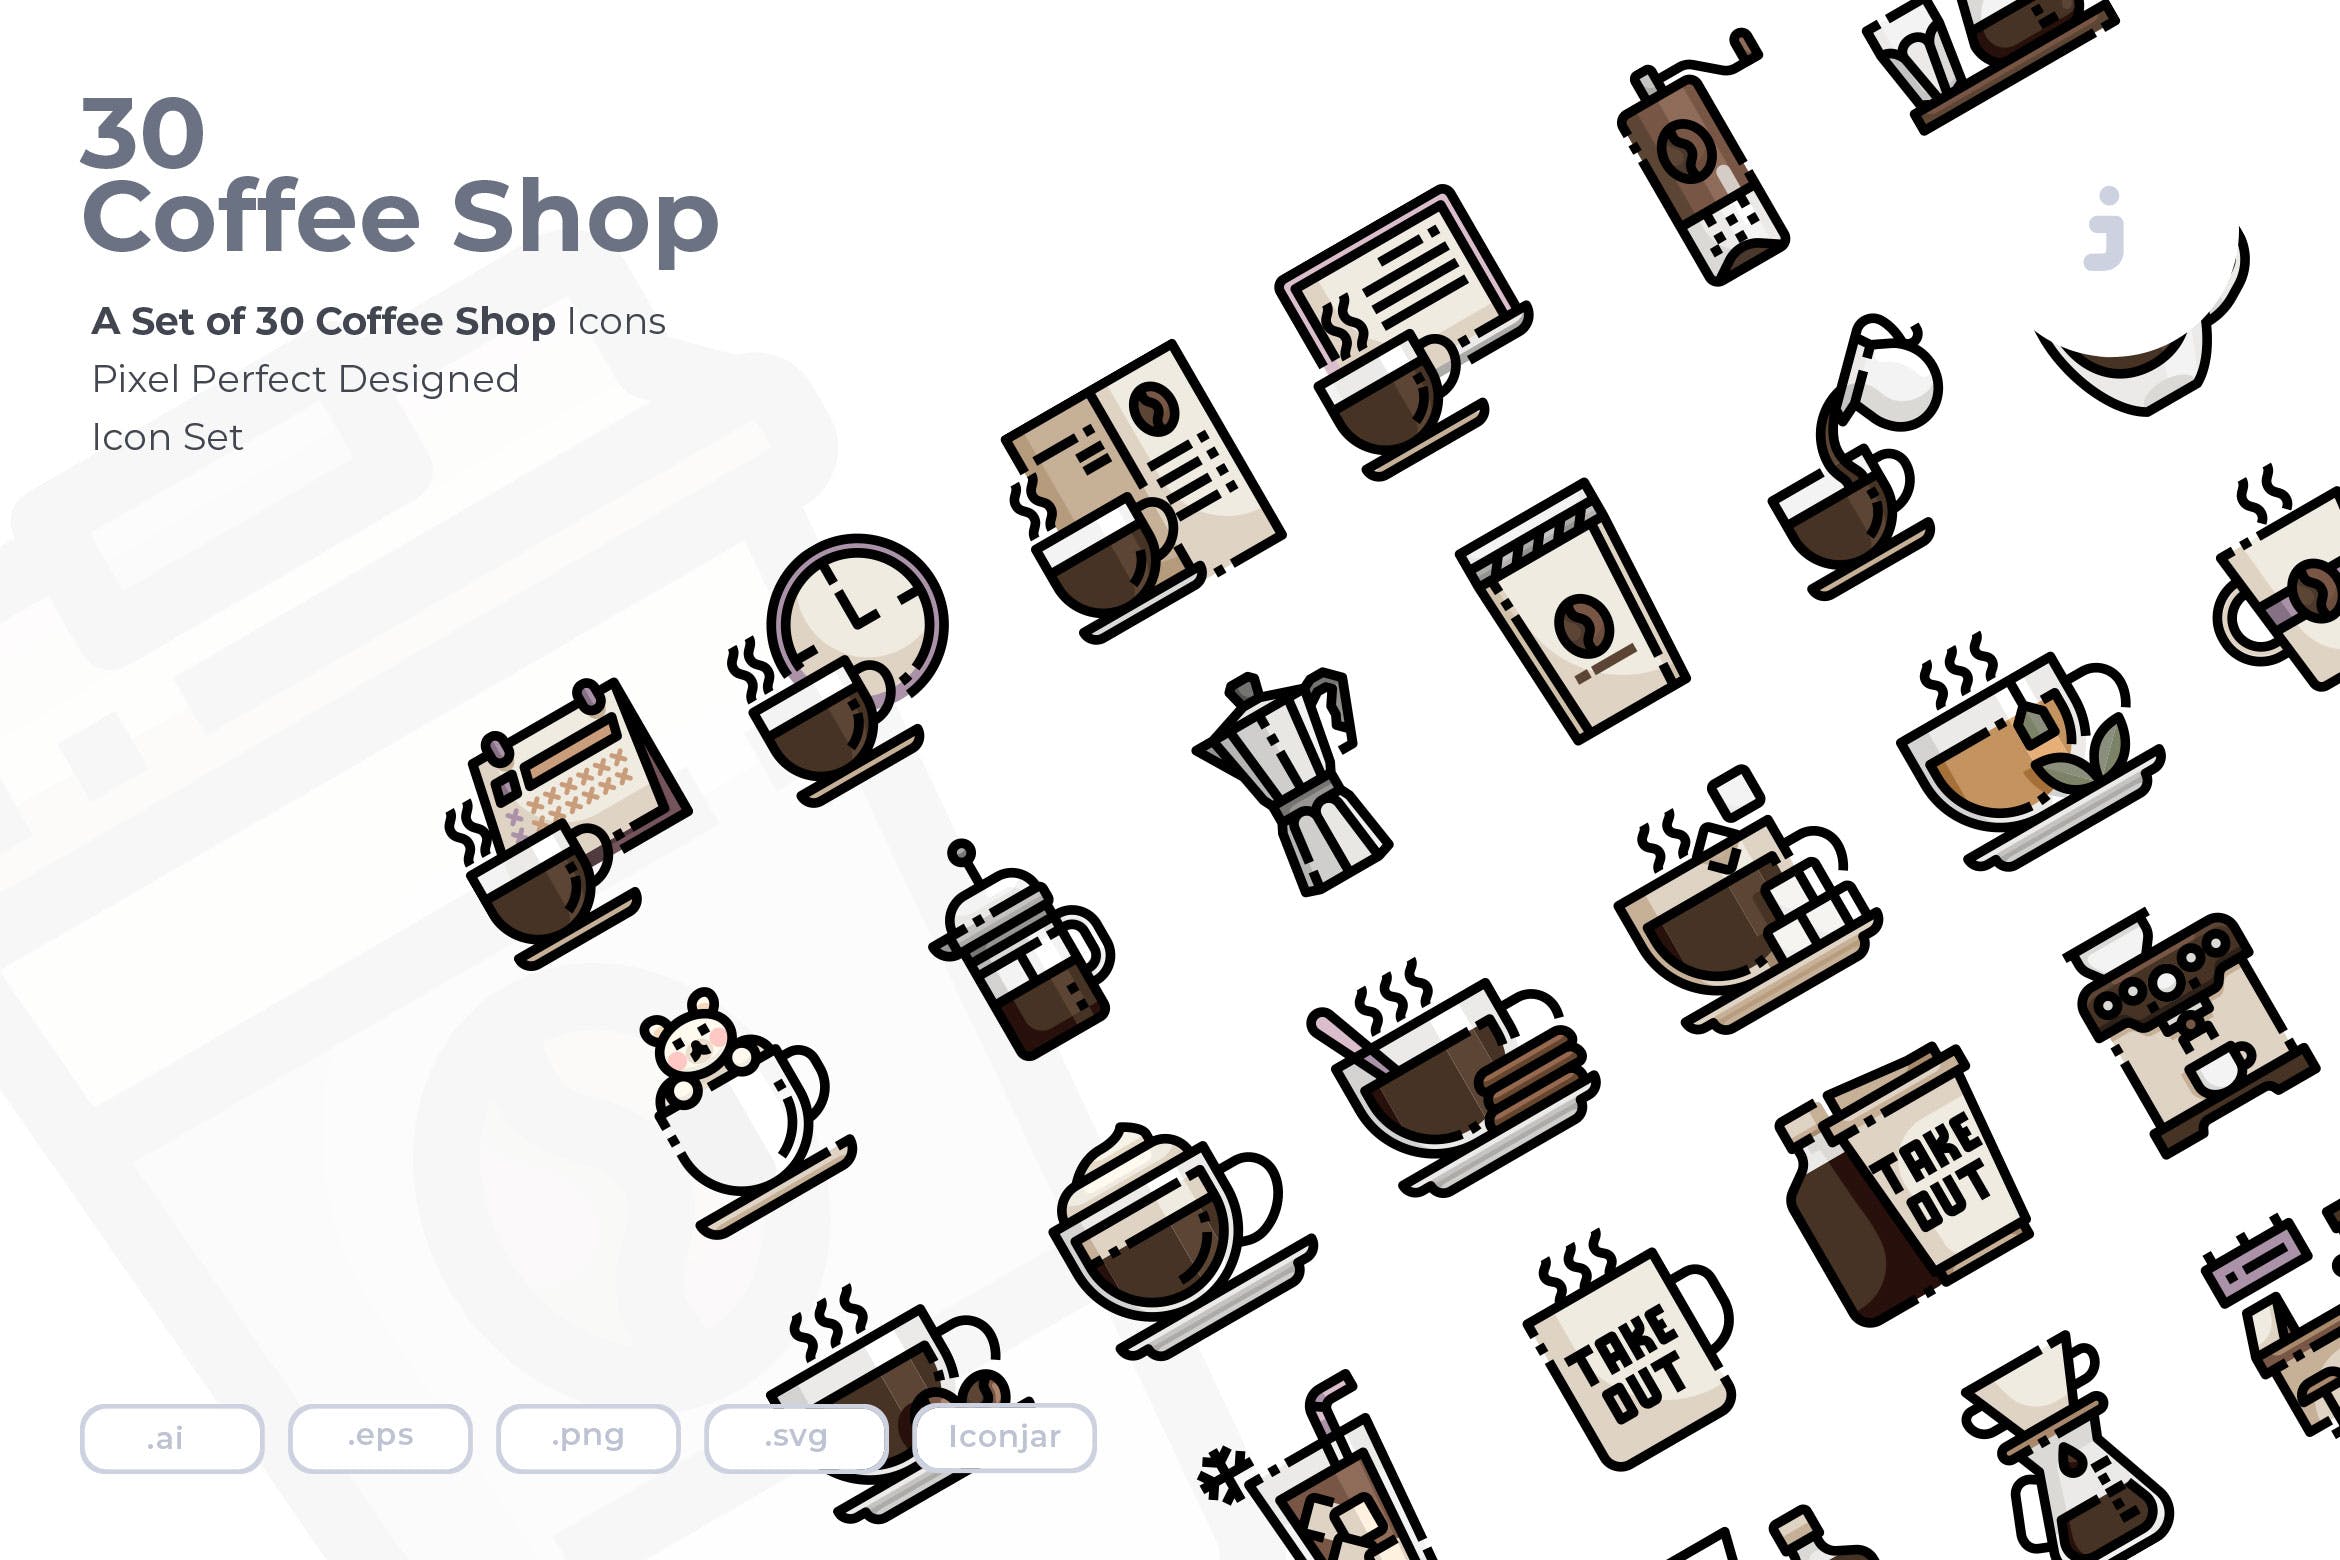 30枚咖啡/咖啡店矢量非凡图库精选图标素材 30 Coffee Shop Icons插图